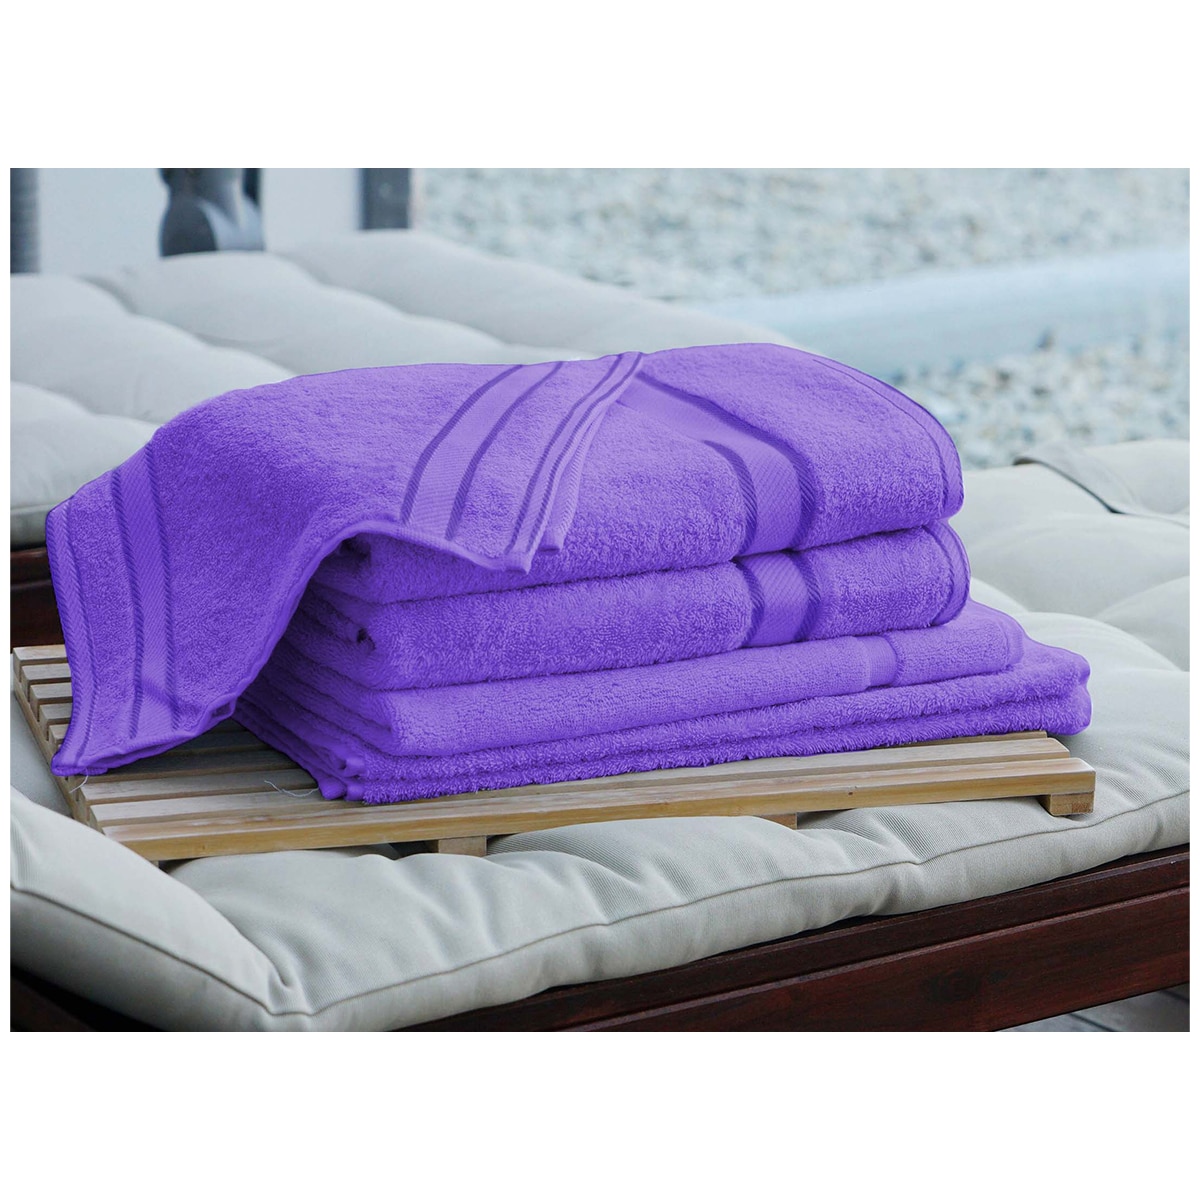 Kingtex Plain dyed 100% Combed Cotton towel range 550gsm Bath Sheet set 7 piece - Purple